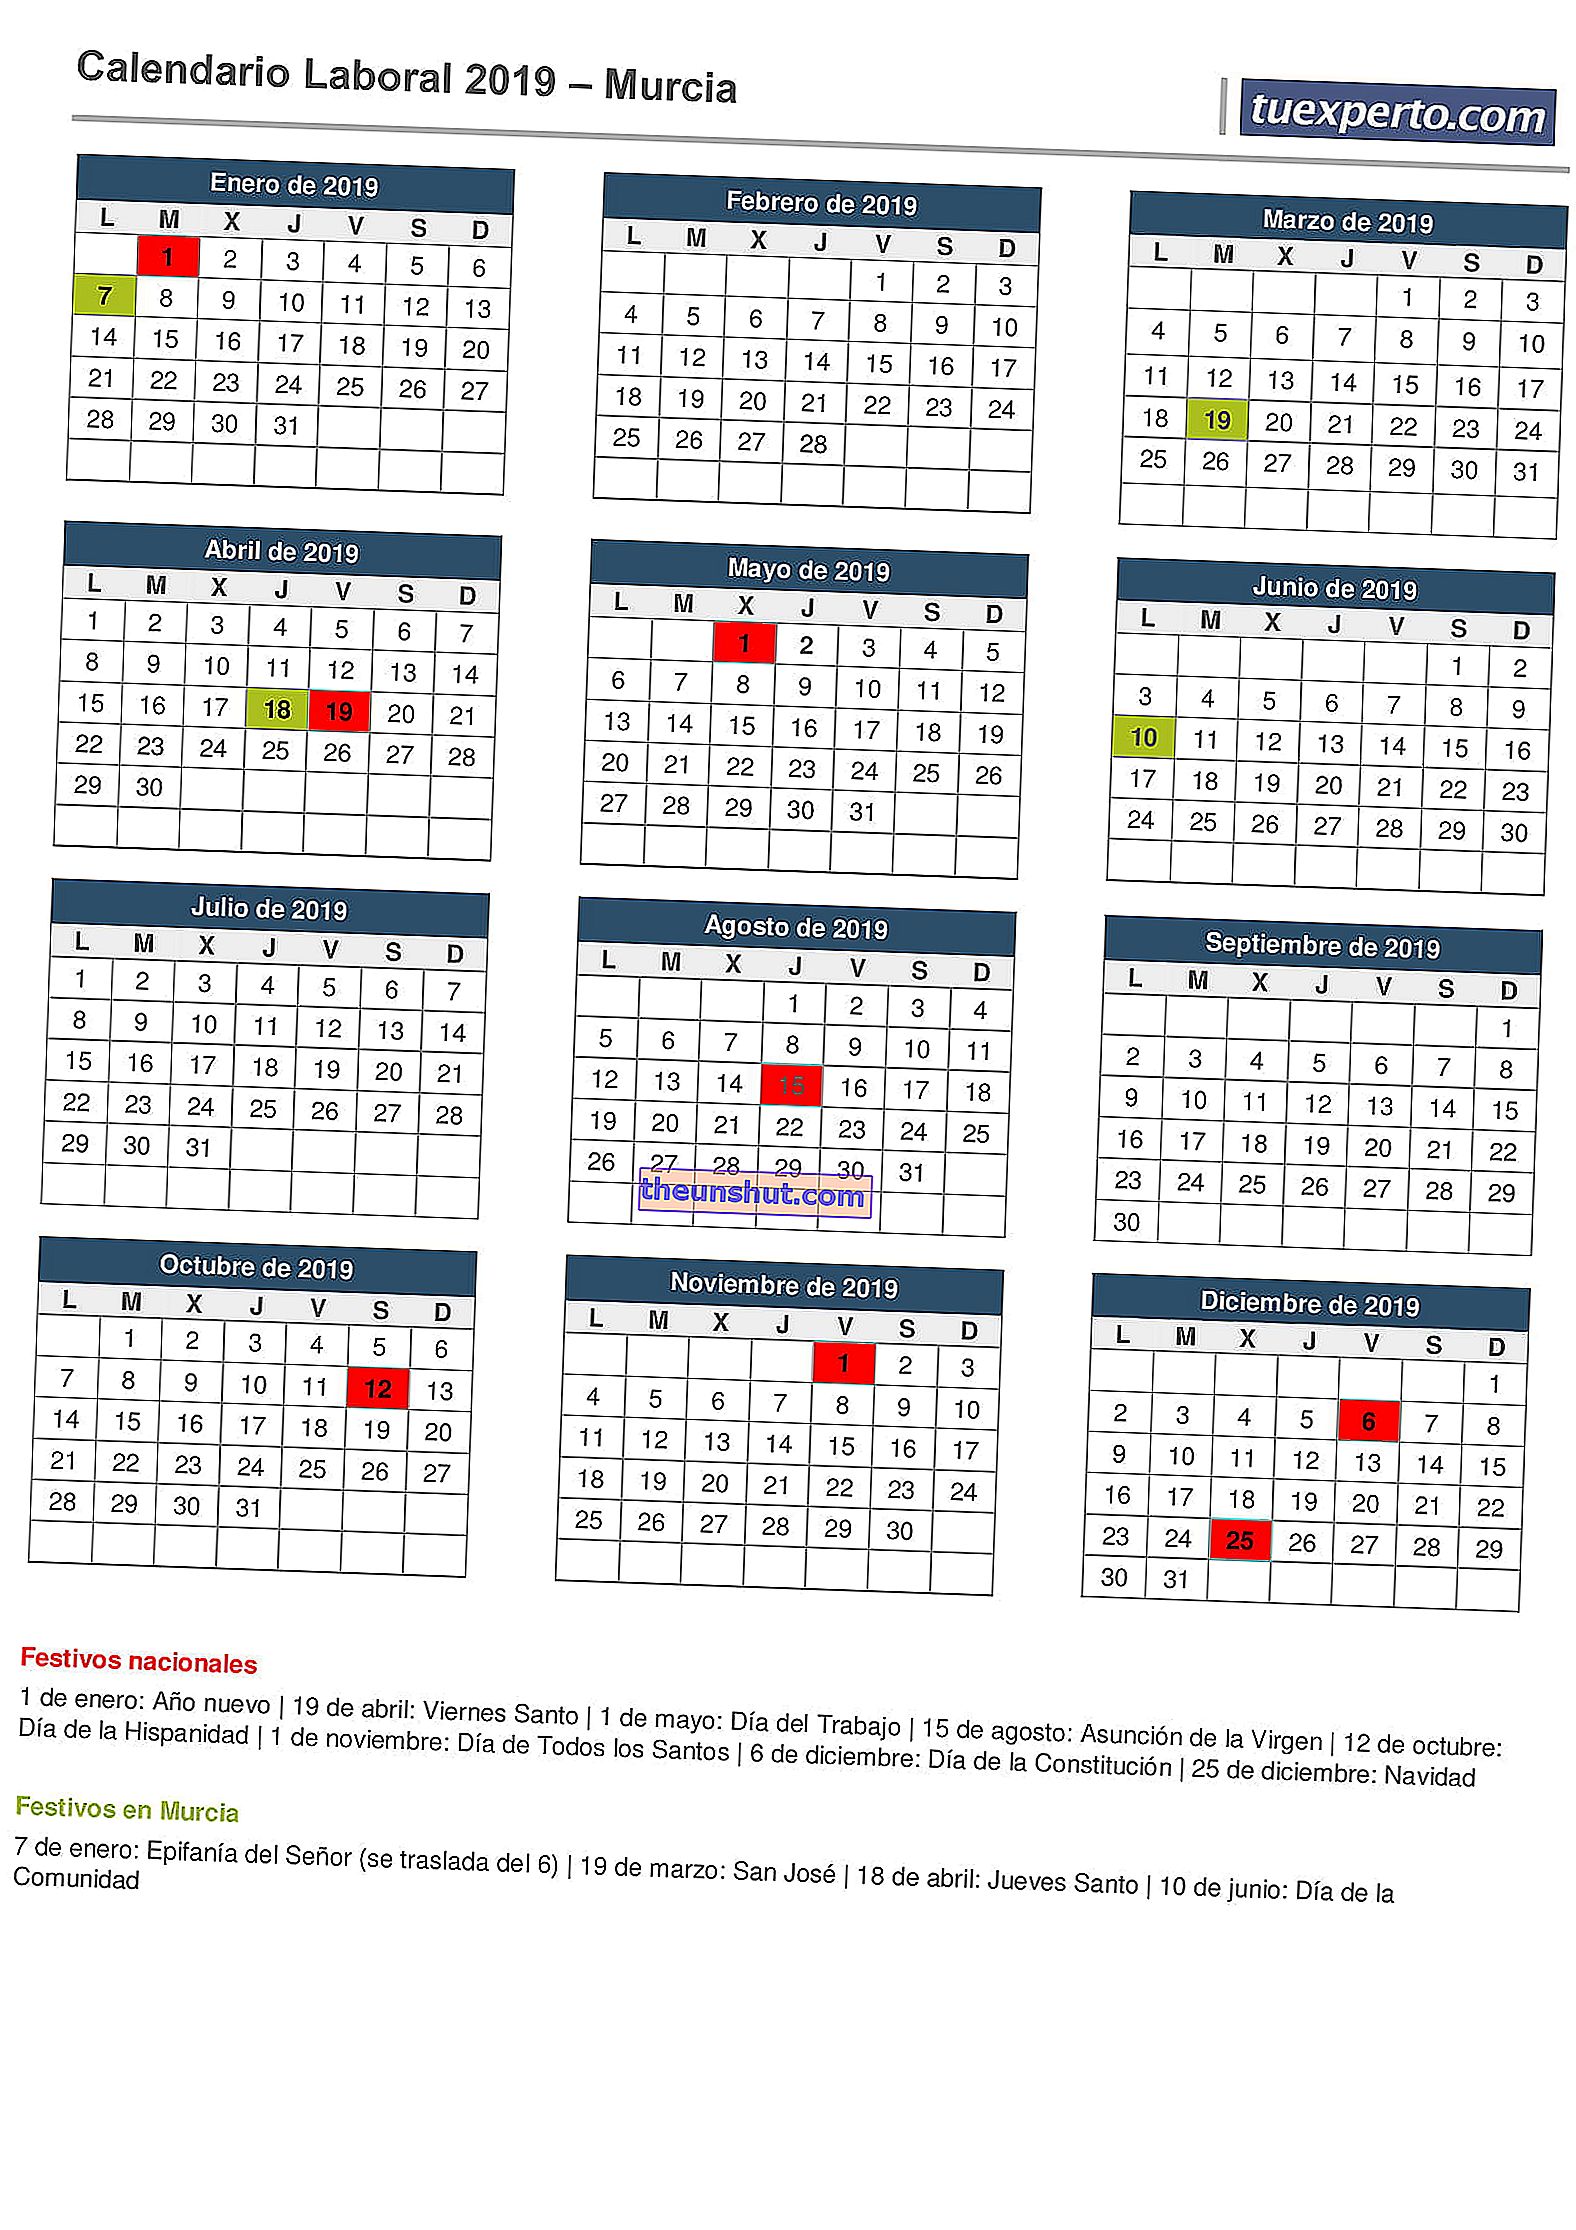 Calendario di lavoro di Murcia 2019